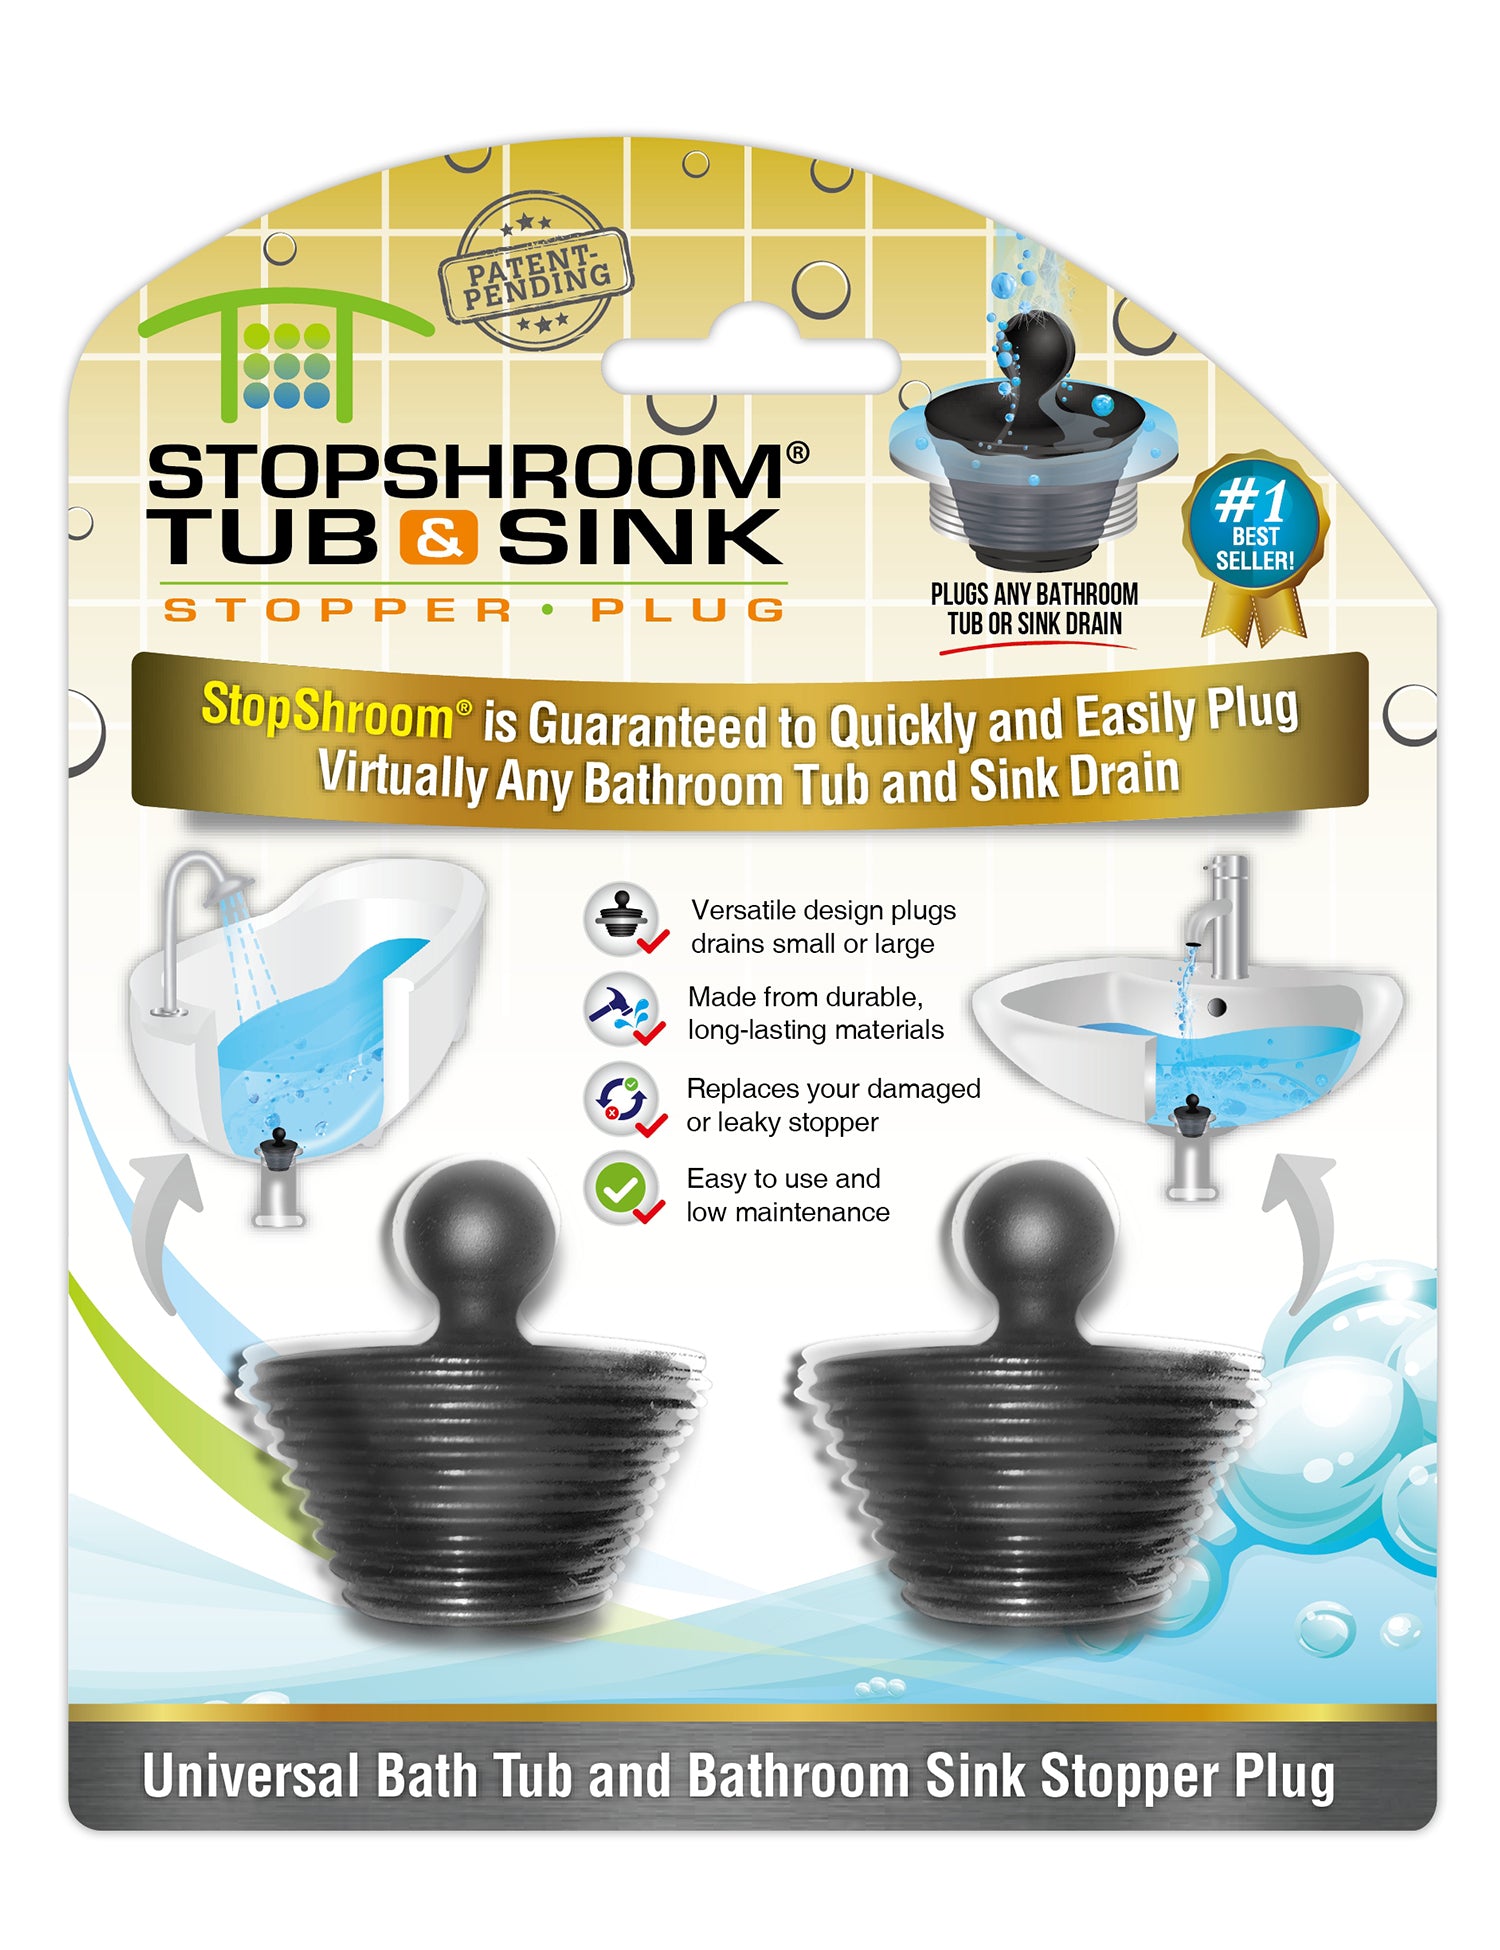 StopShroom (Black) Tub & Sink Universal Stopper Plug for Bathtub & Bathroom Drains Drain Stopper Juka Innovations Corporation 